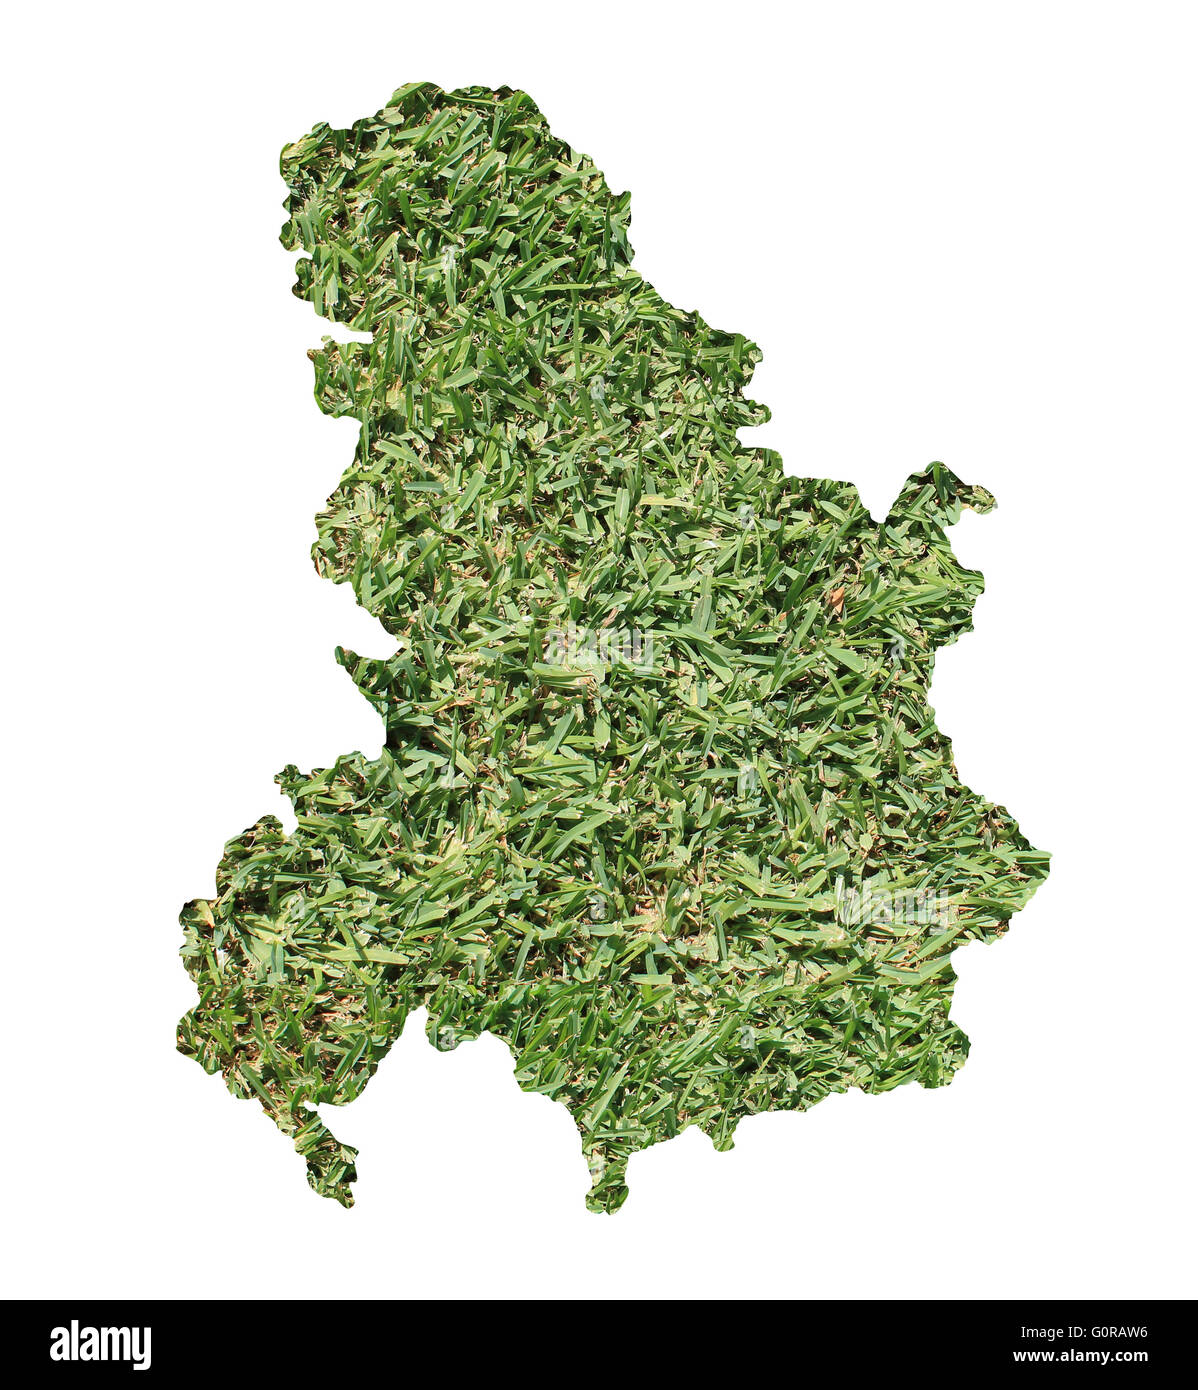 Karte von Serbien und Montenegro gefüllt mit grünen Rasen, Umwelt und Ökologie-Konzept. Stockfoto